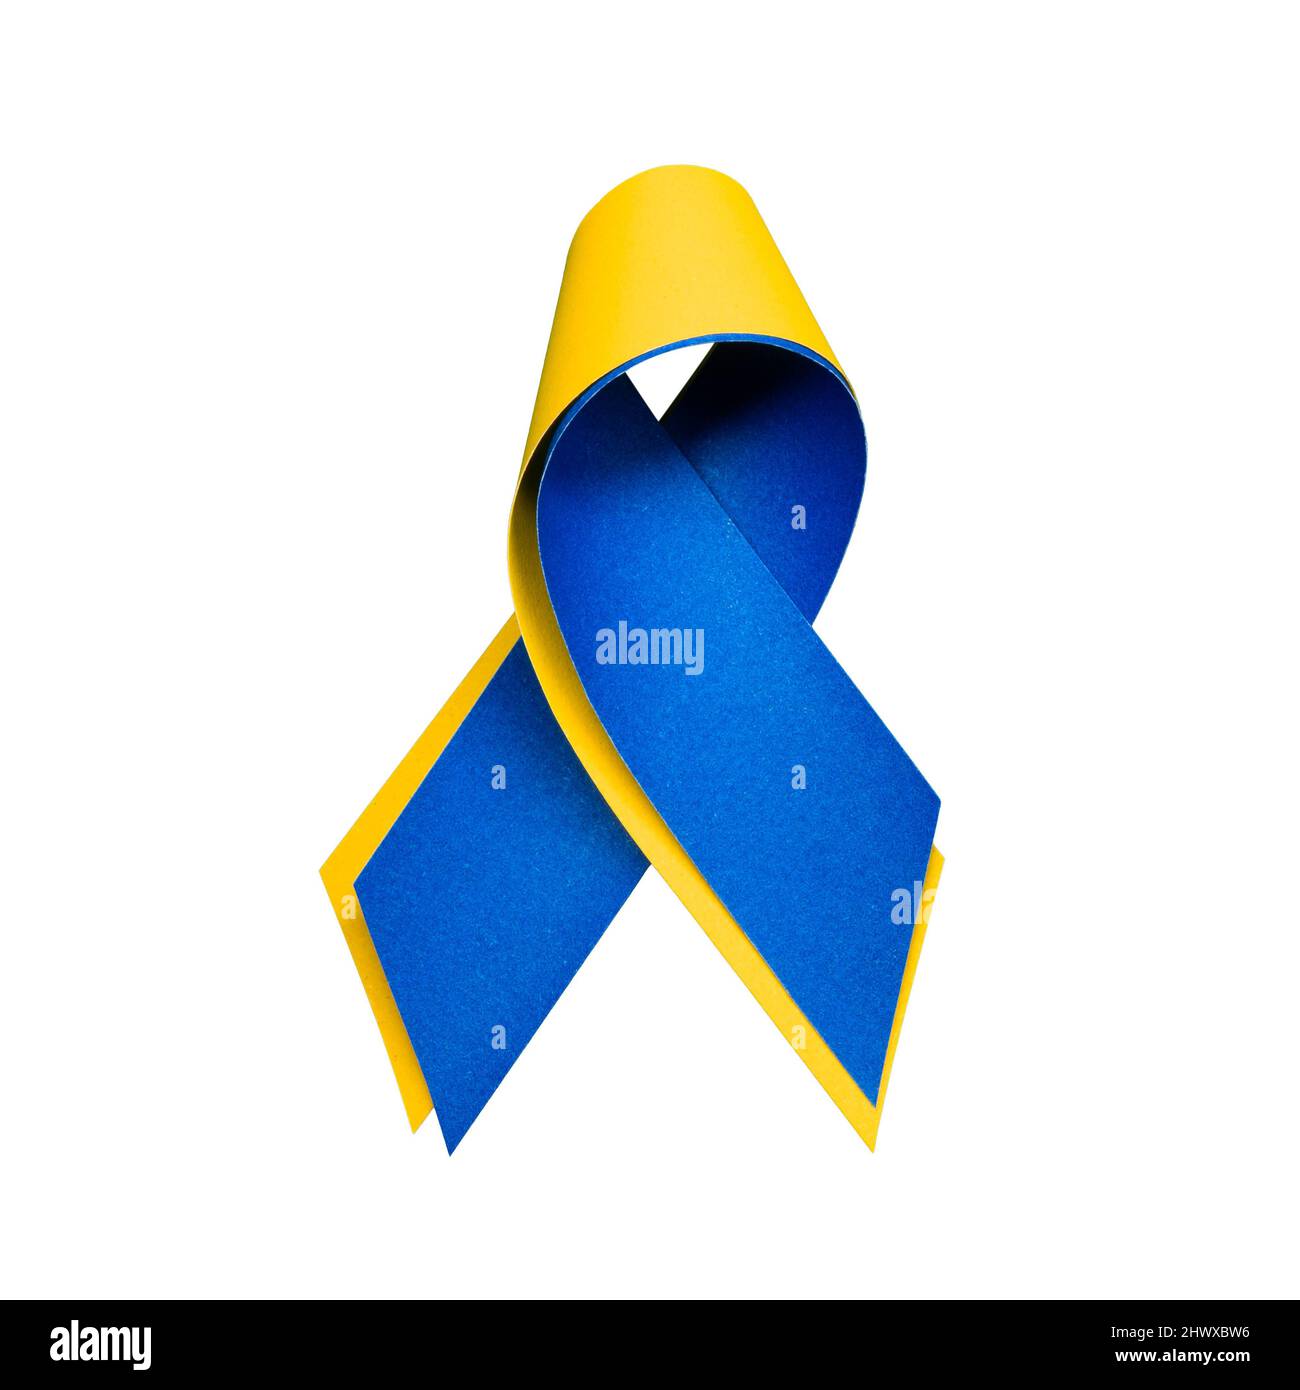 Ruban bleu et jaune pour l'Ukraine sur fond blanc Banque D'Images